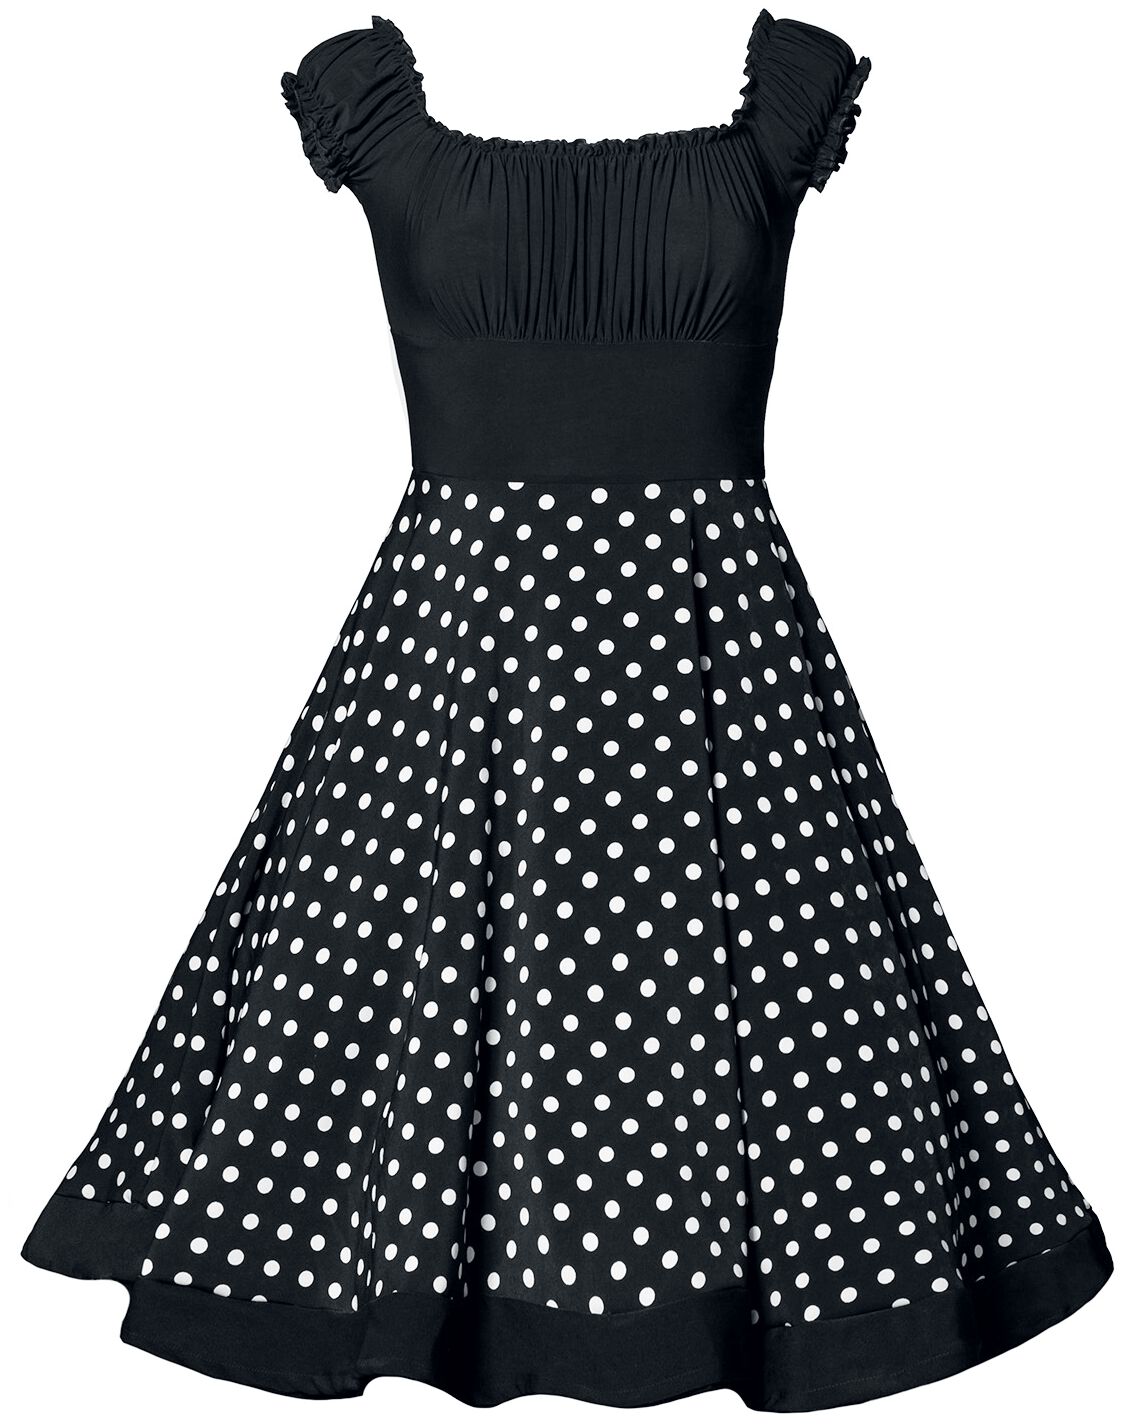 Belsira Schulterfreies Swing-Kleid Mittellanges Kleid schwarz weiß in M